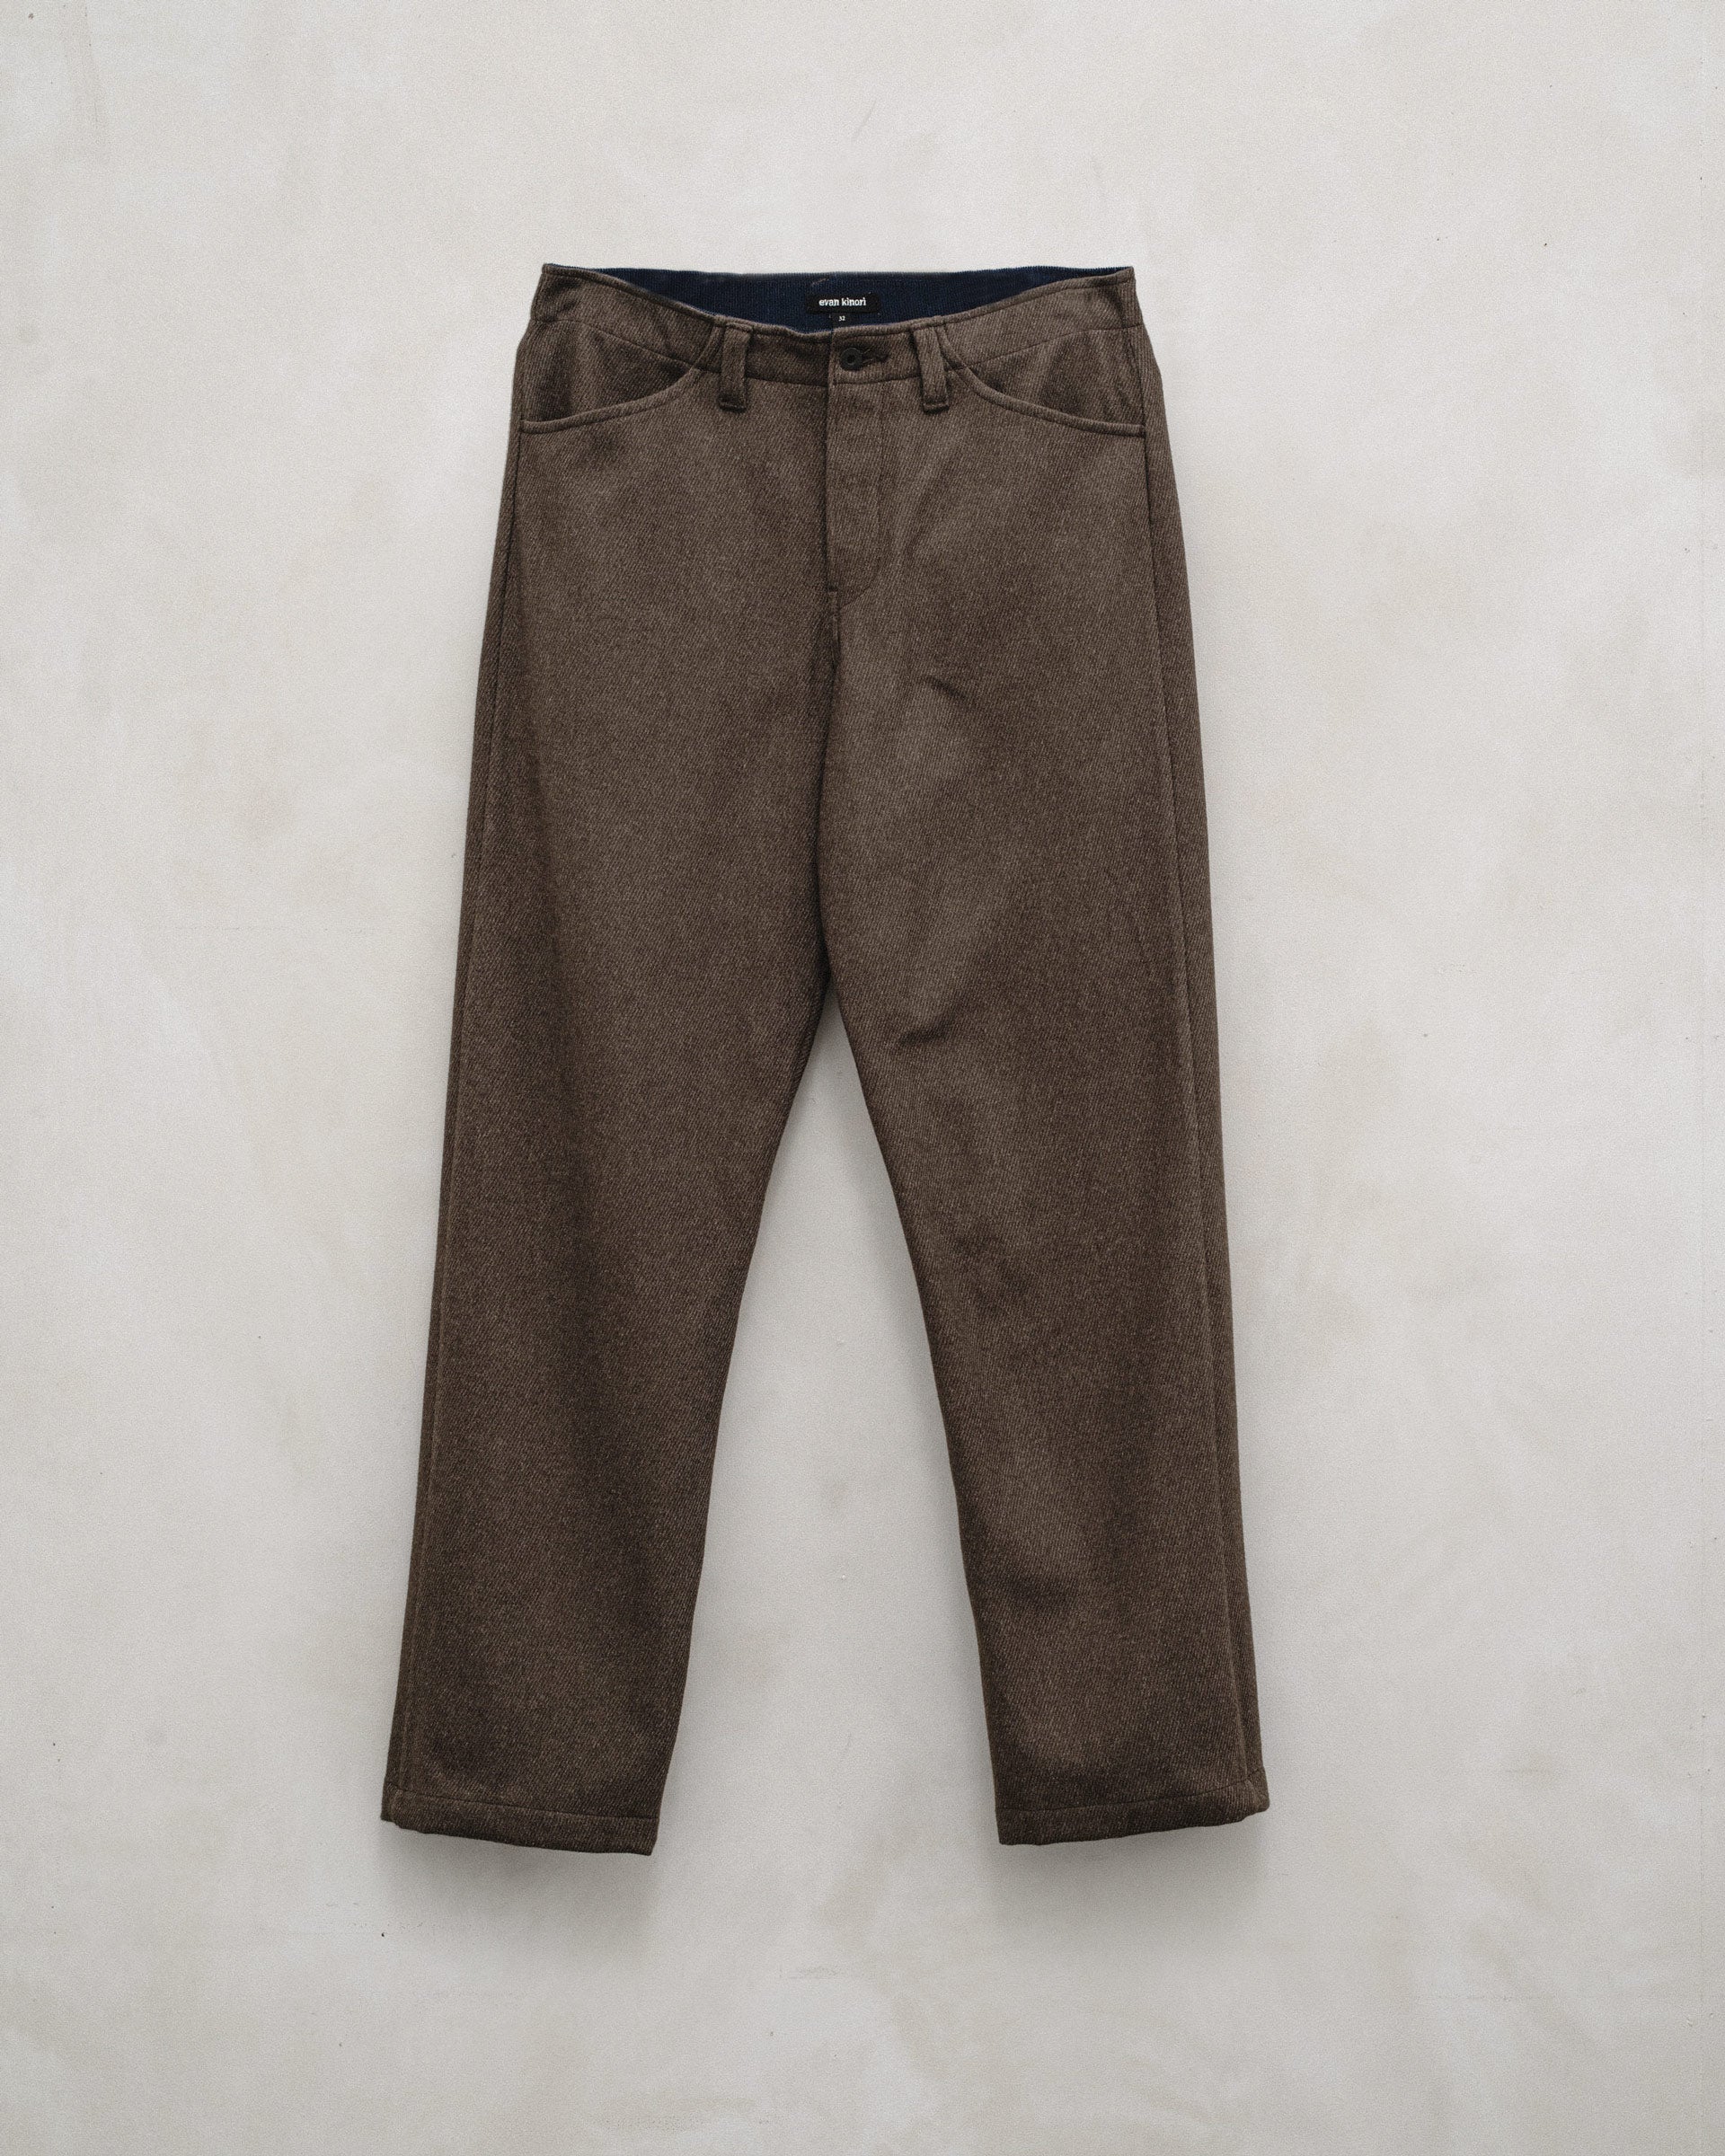 Four Pocket Pant - Yarn Dyed Wool/Cotton Twill, Olive Melange – evan kinori